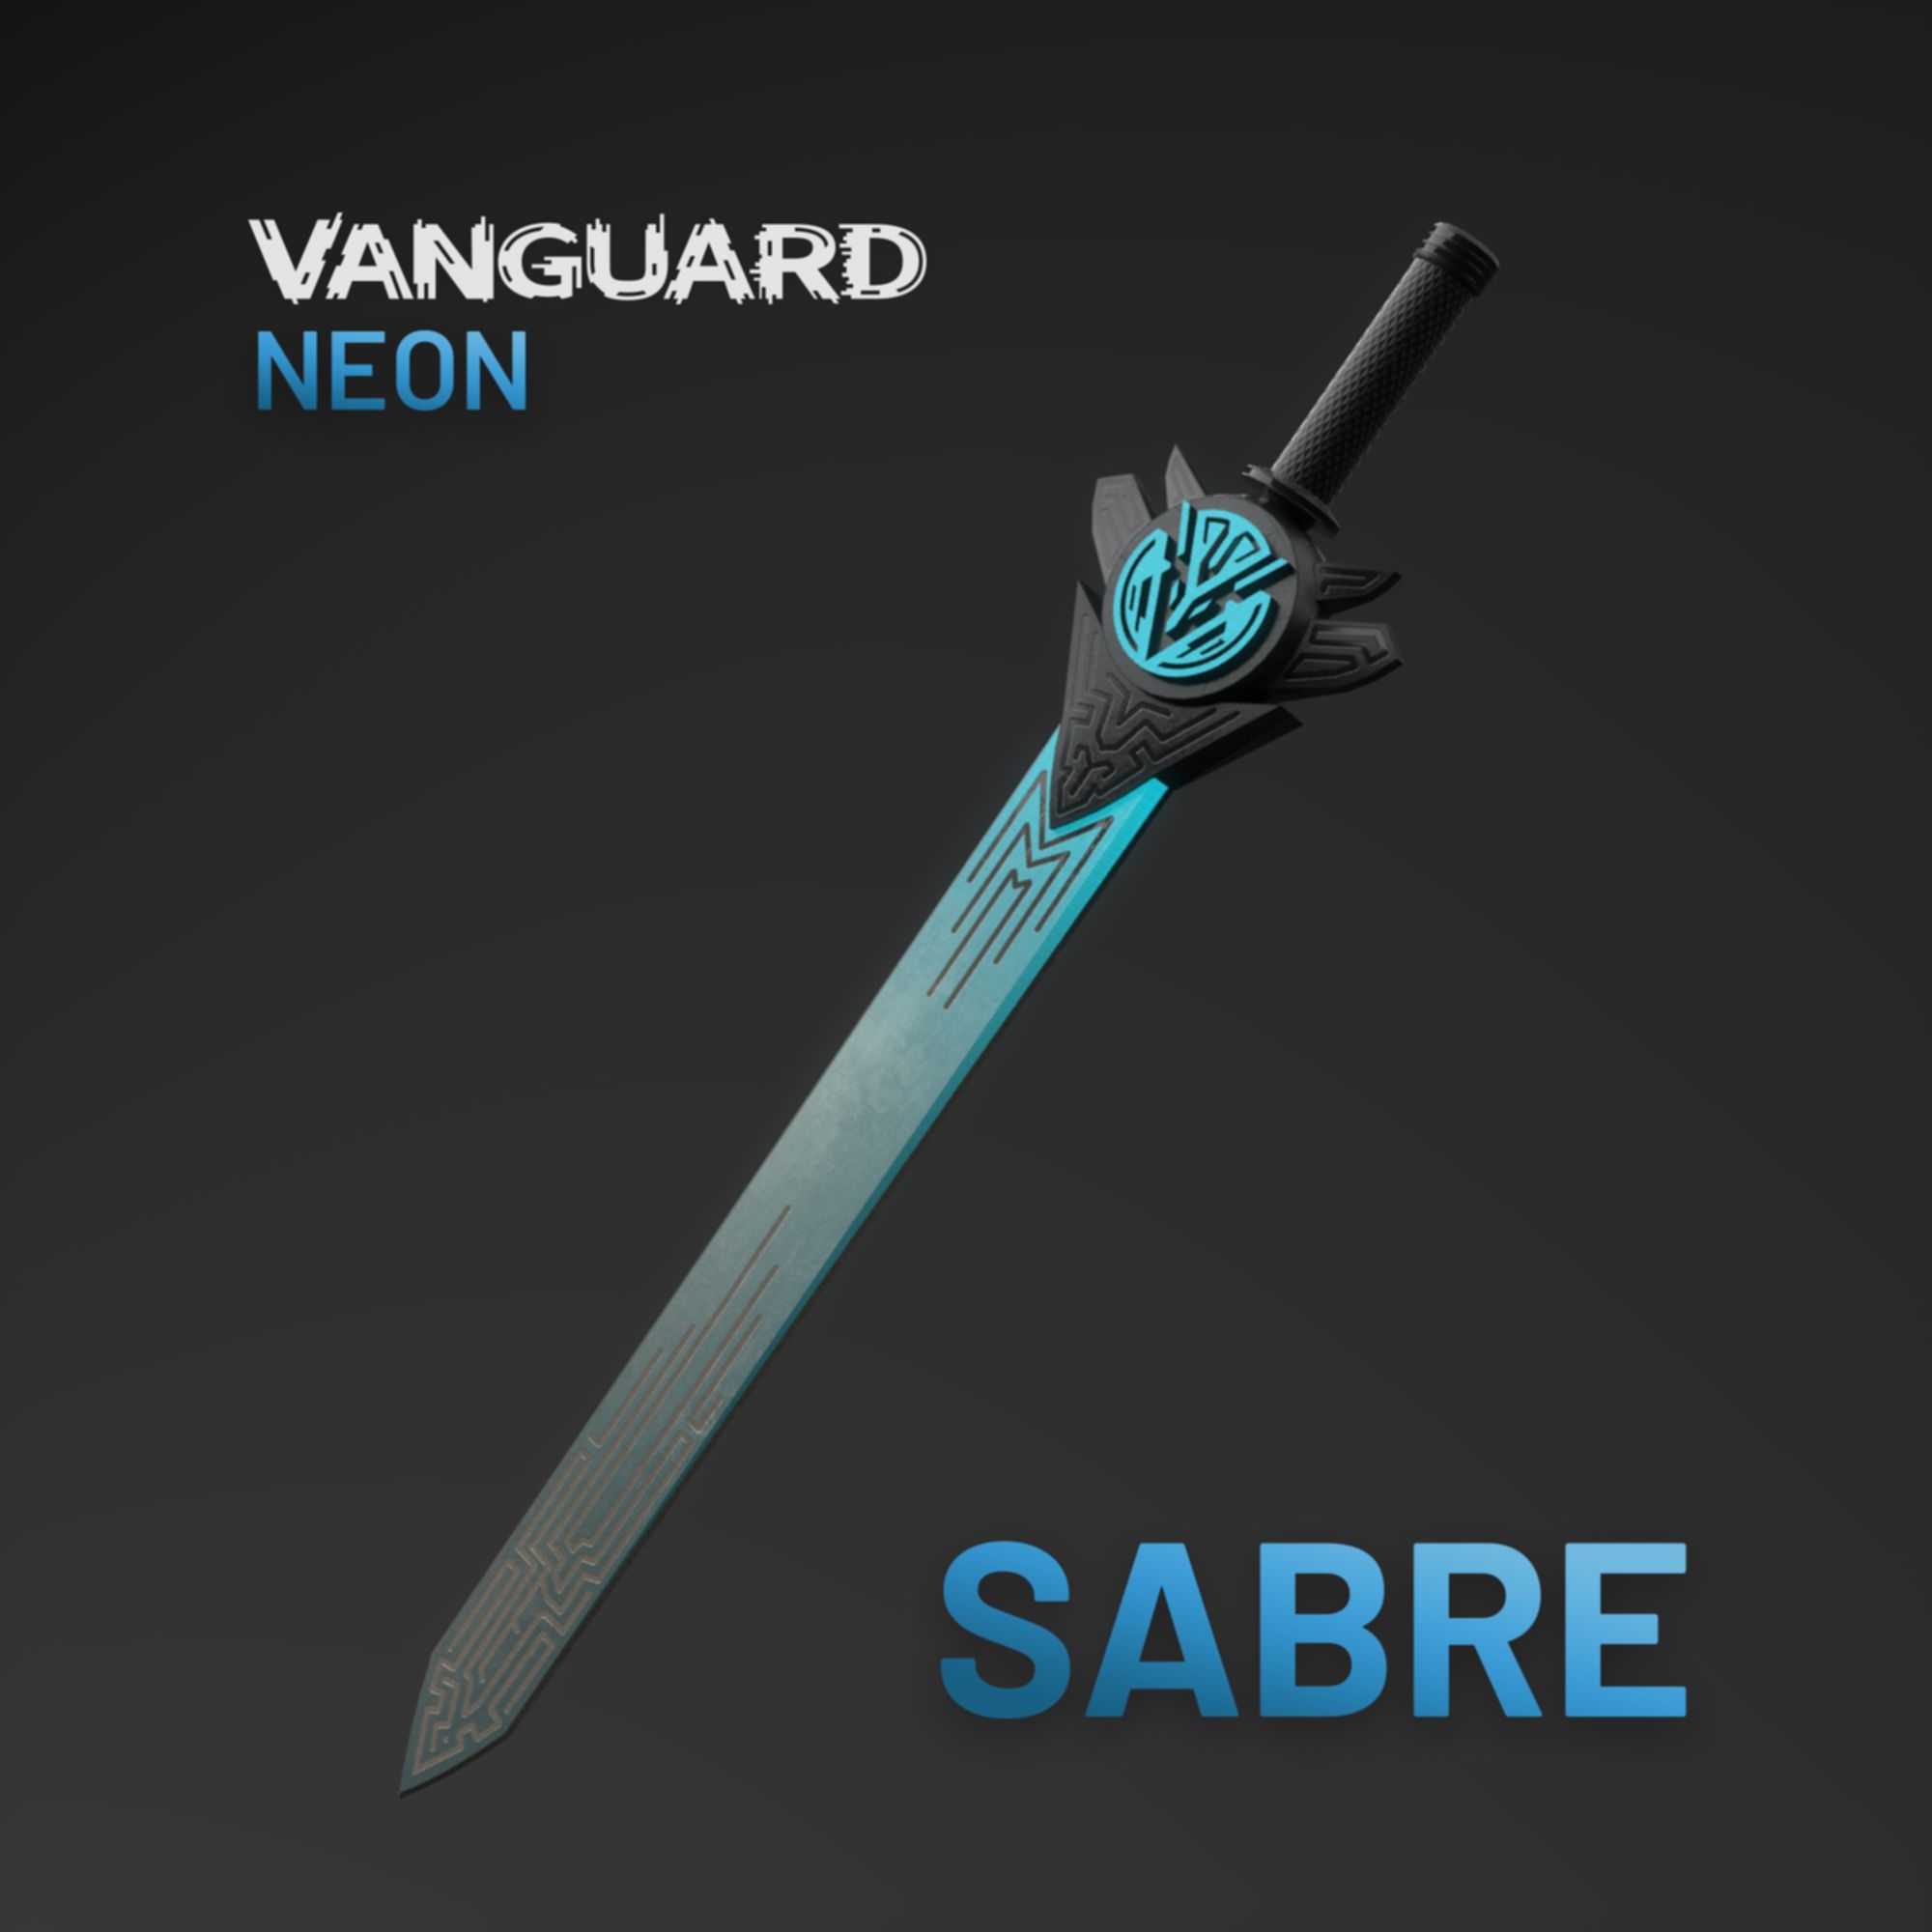 Vanguard Neon Sabre